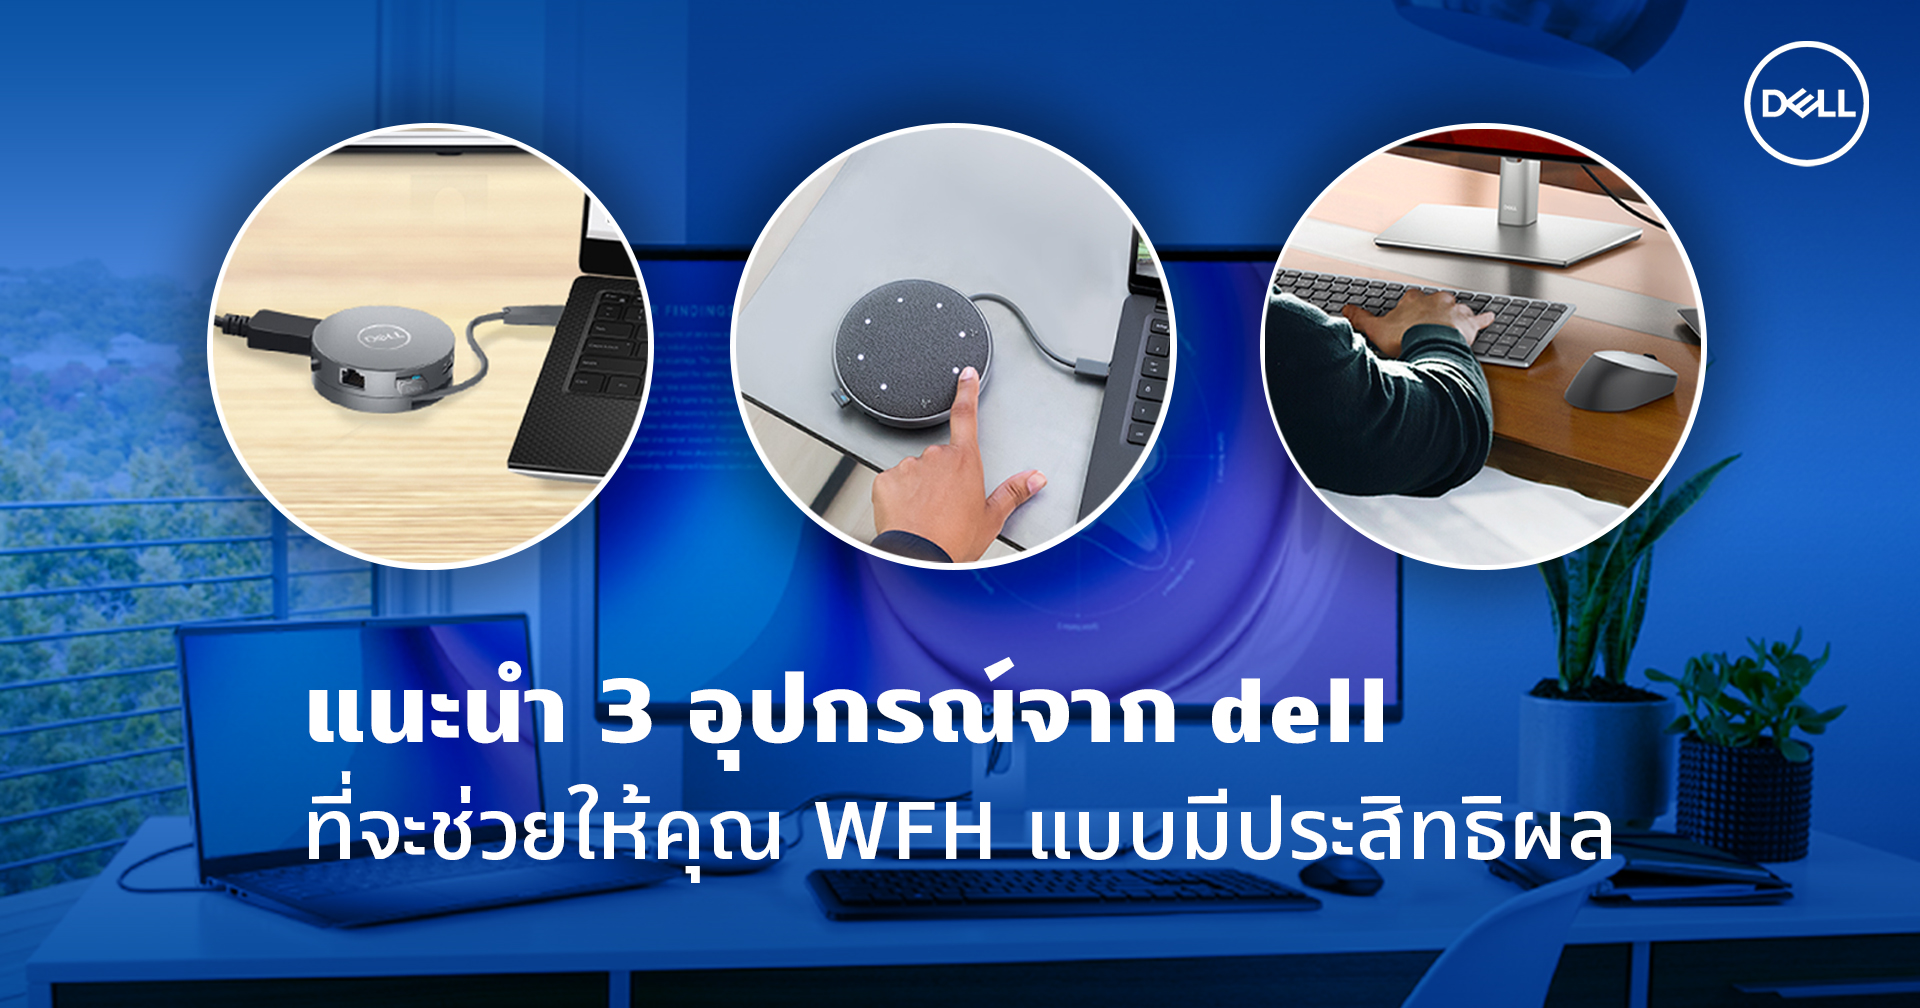 แนะนำ 3 อุปกรณ์จาก Dell ที่จะช่วยให้คุณ WFH แบบมีประสิทธิผล